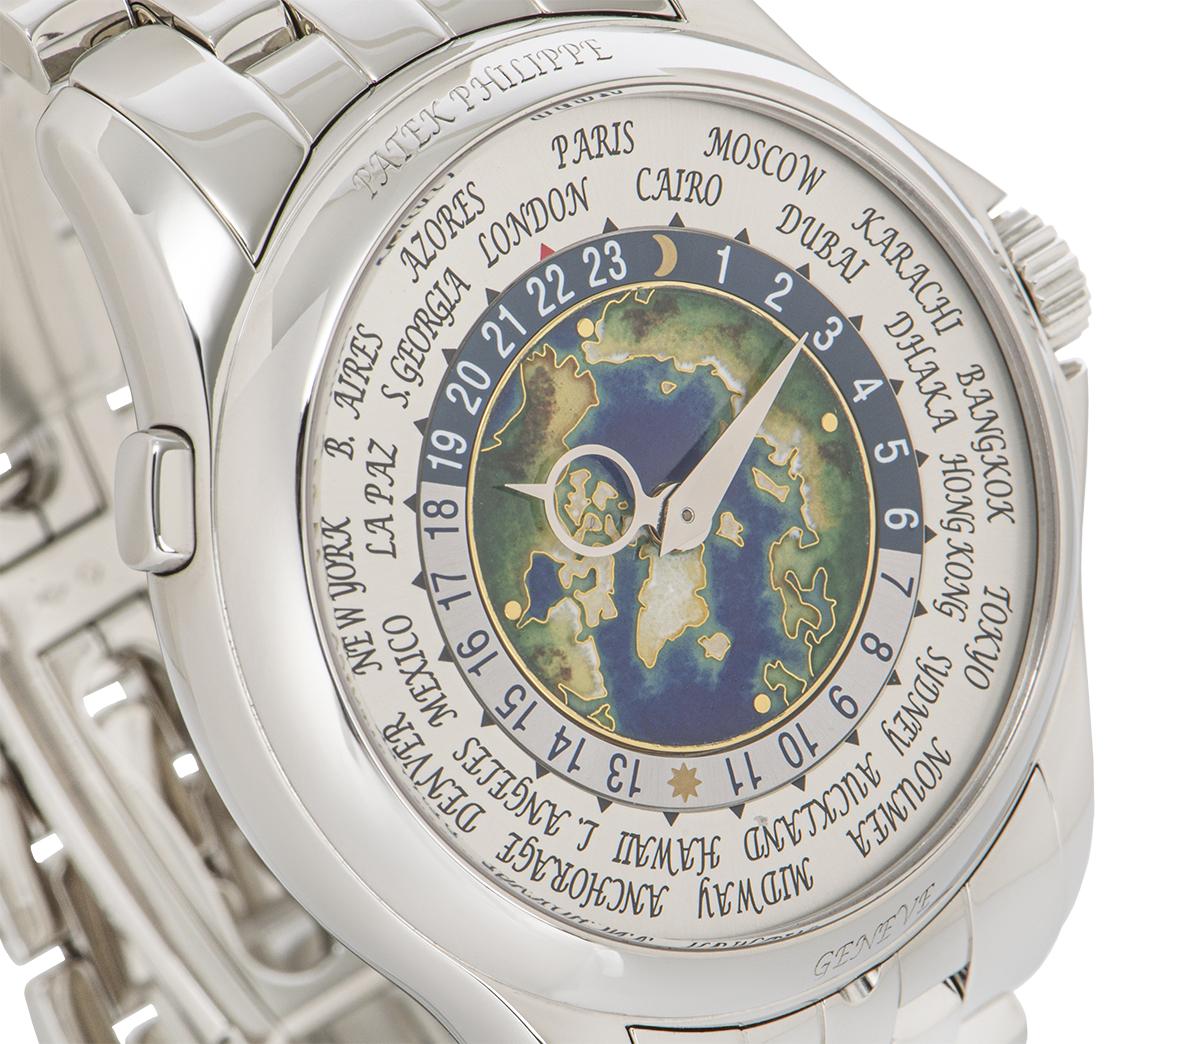  Patek Philippe Platinum Complications World Time Watch 5131/1P-001 Pour hommes 